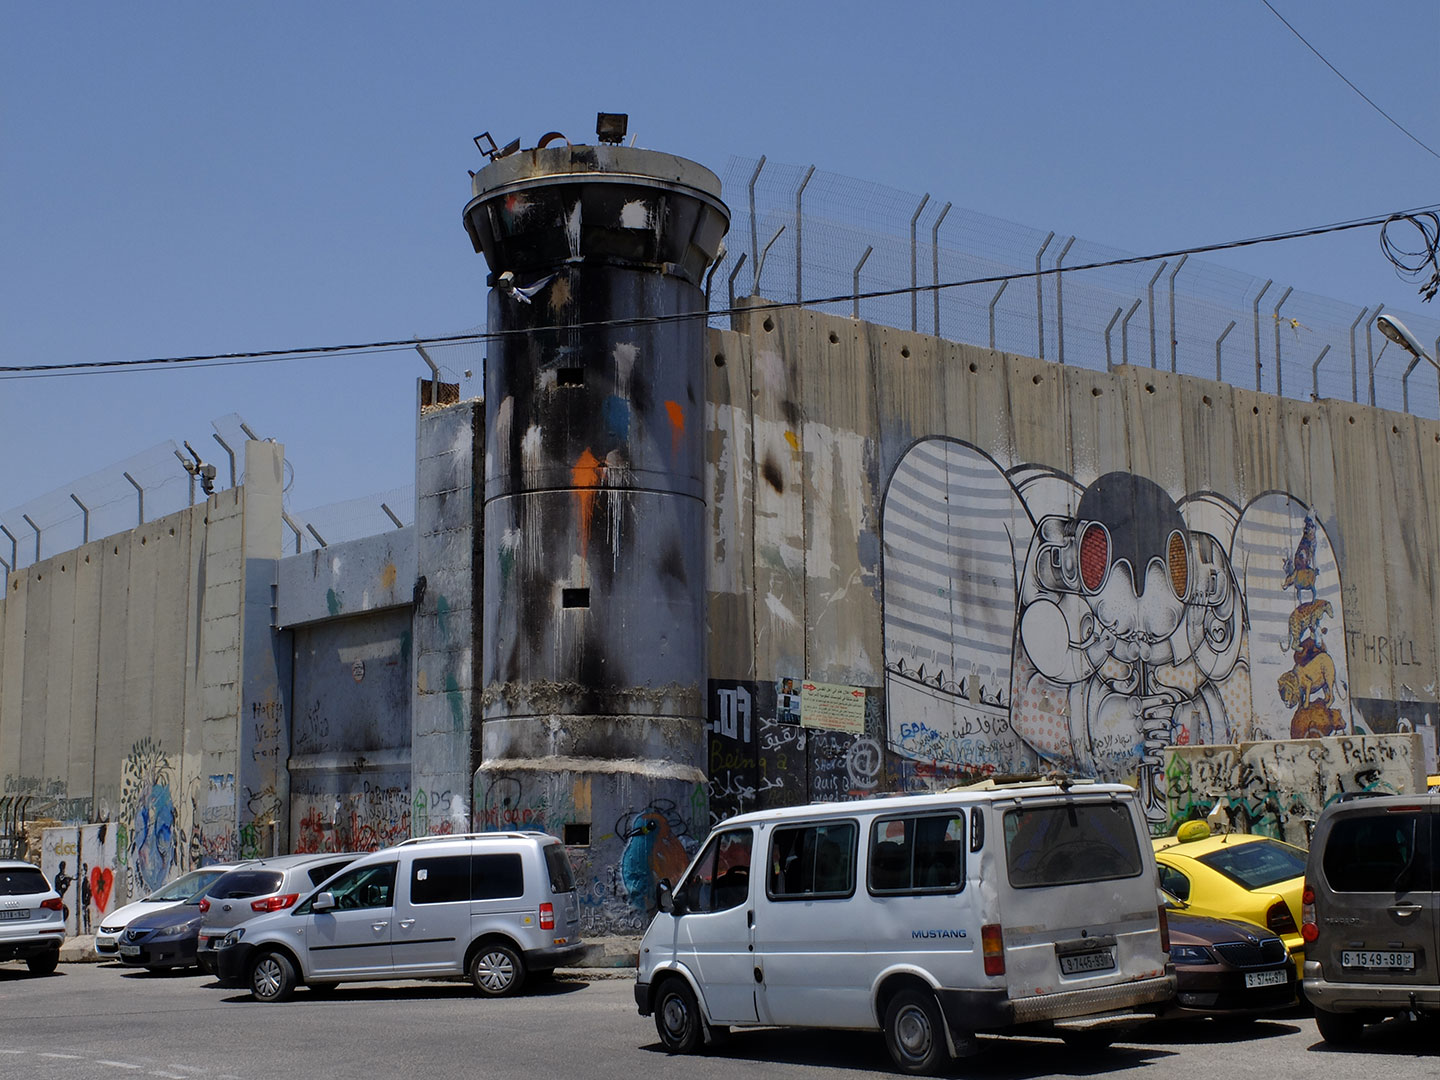 Betlemme, una torretta posta sul muro di divisione tra Israele e Palestina. Qui davanti, dopo la preghiera del venerdì, non è strano trovare palestinesi intenti a lanciare pietre contro il muro